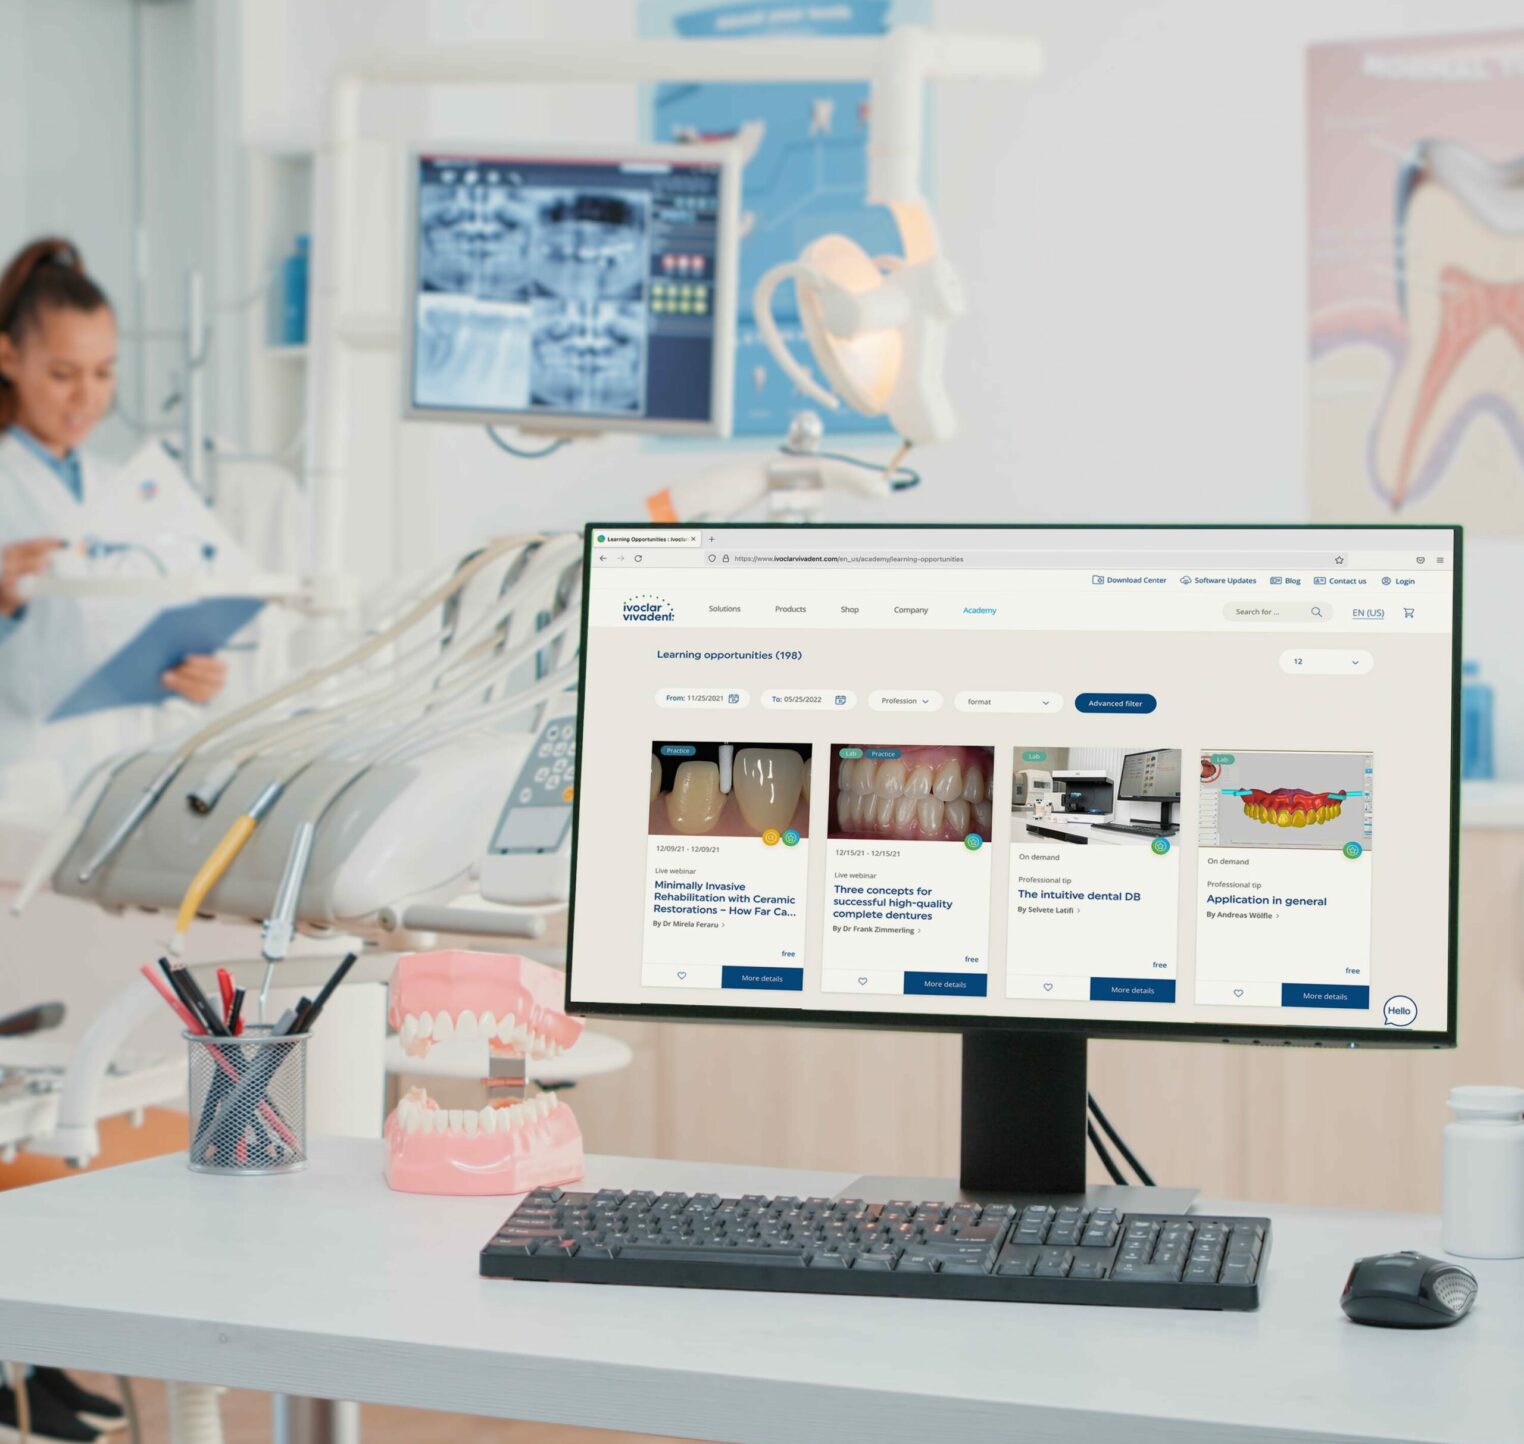 Bild von einer Zahnarztpraxis mit einem Bildschirm und dem Screen der Ivoclar-Vivadent-Plattform